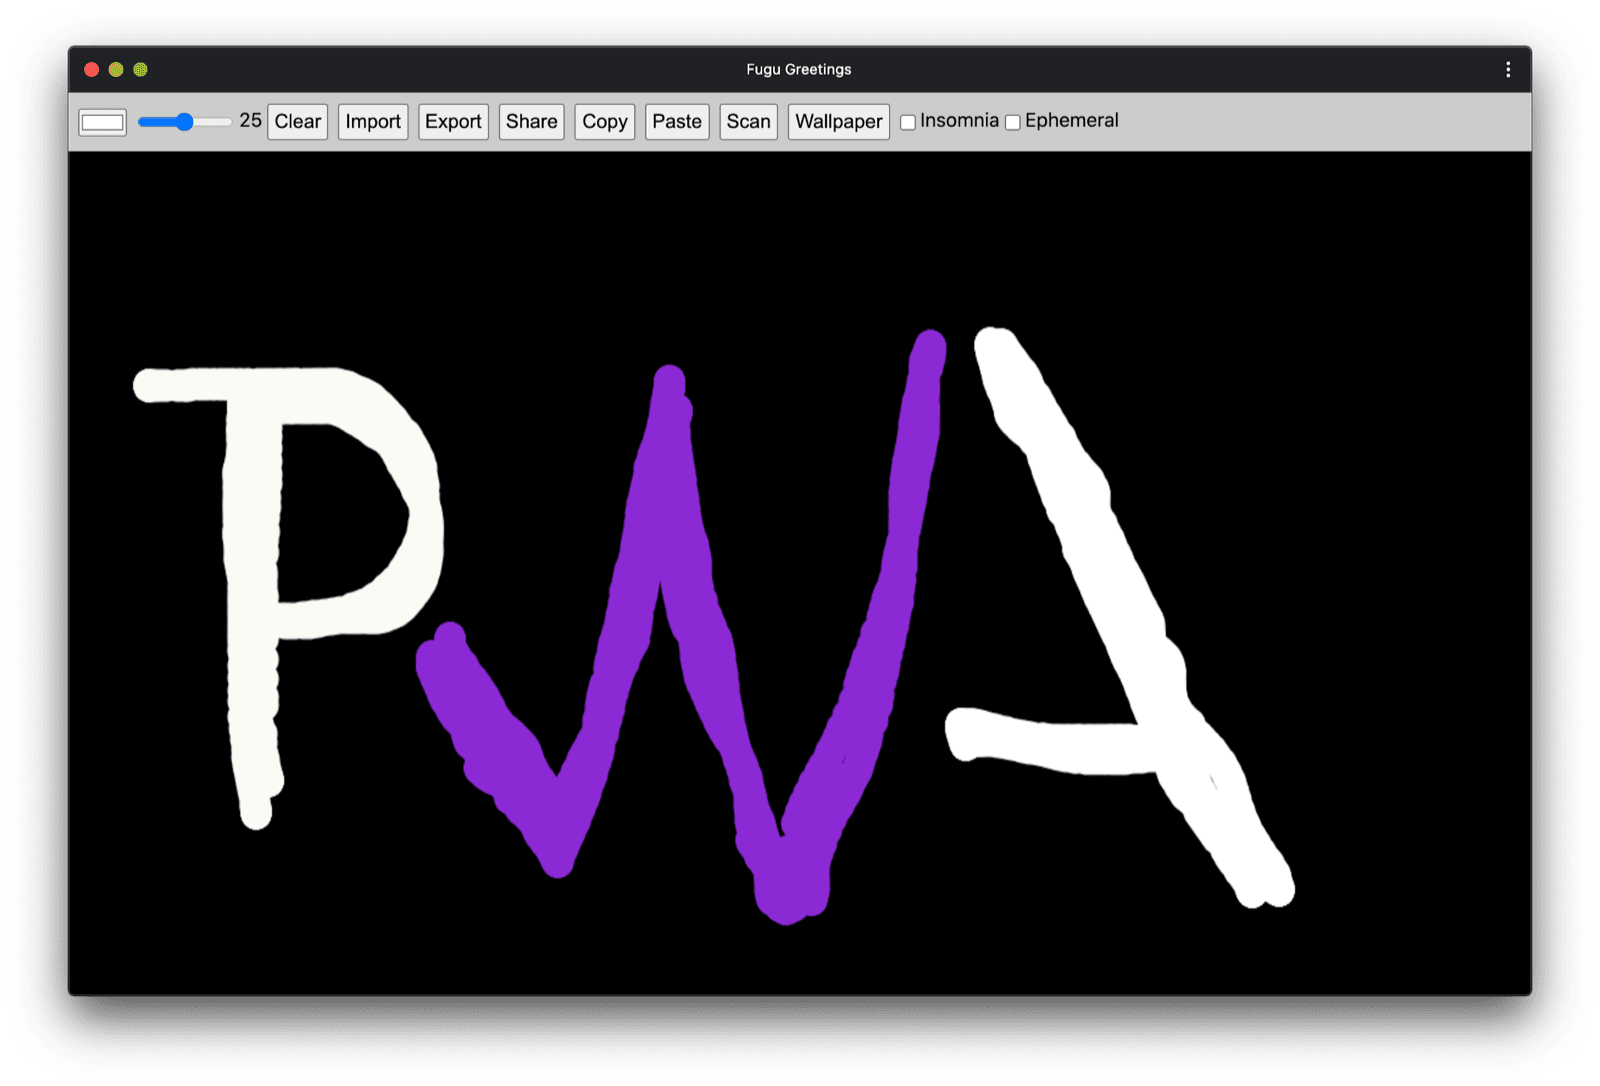 PWA do Fugu Greetings com um desenho parecido com o logotipo da comunidade do PWA.